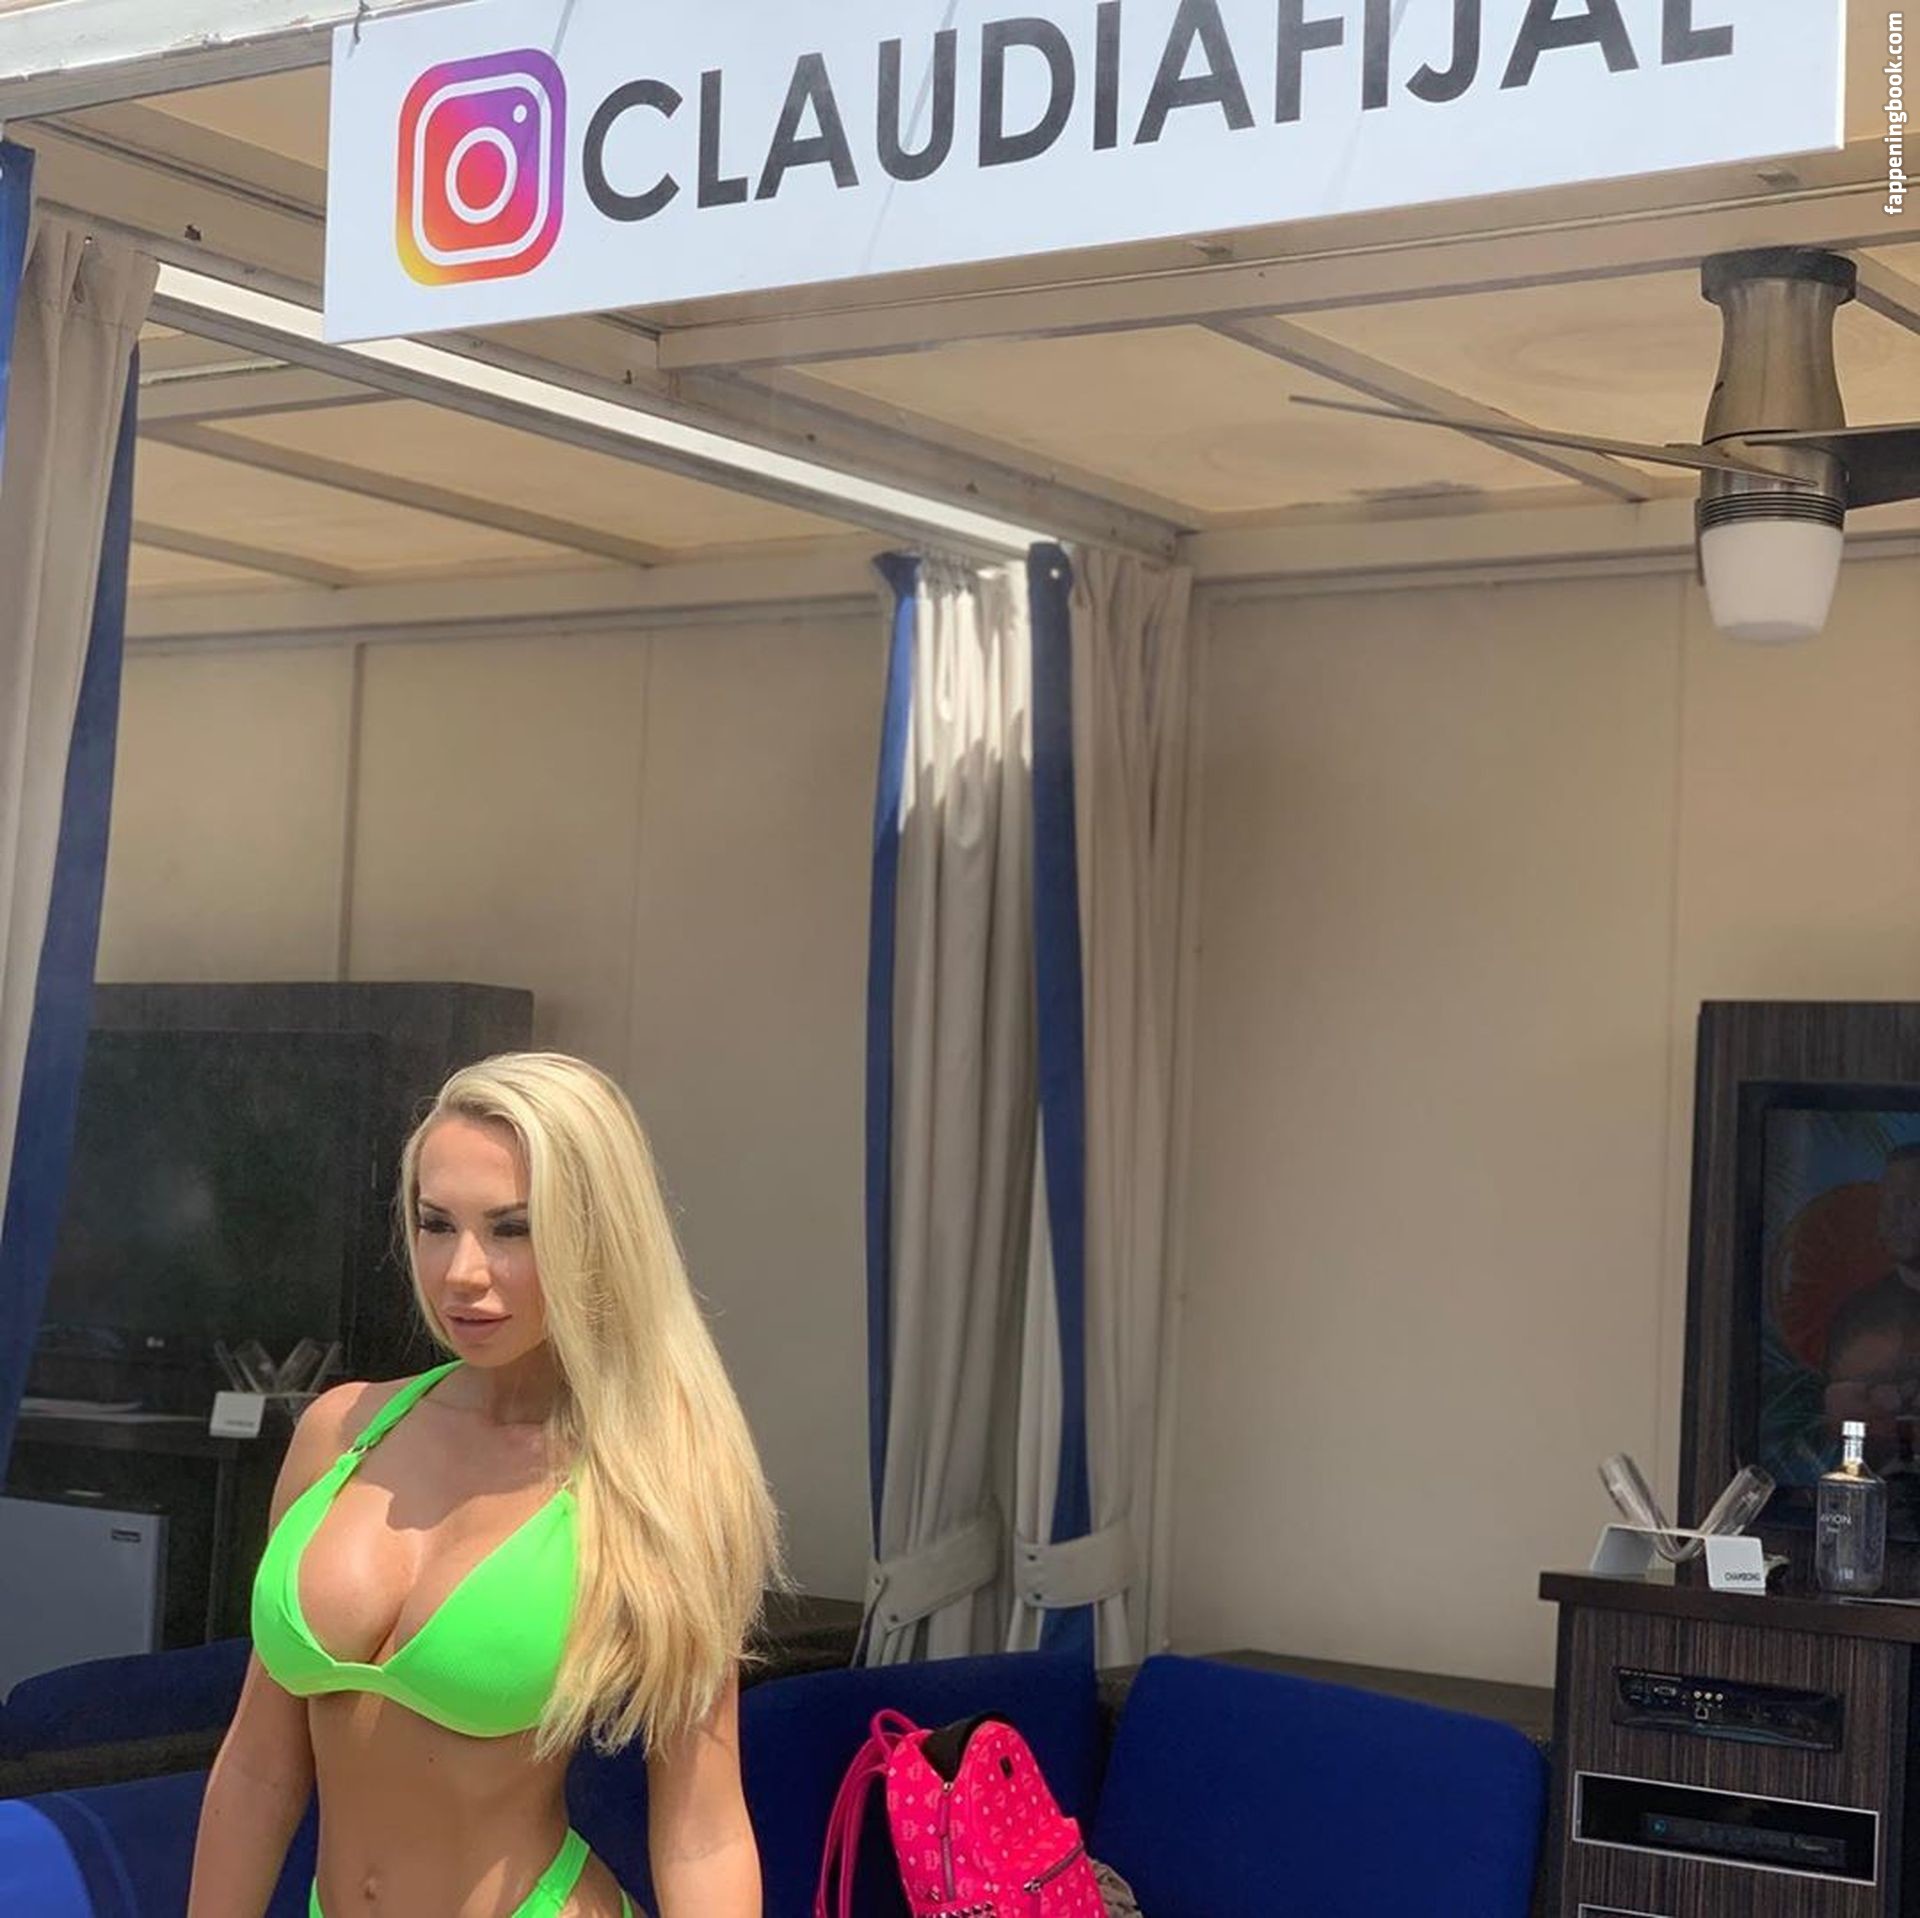 Claudia Fijal Nude